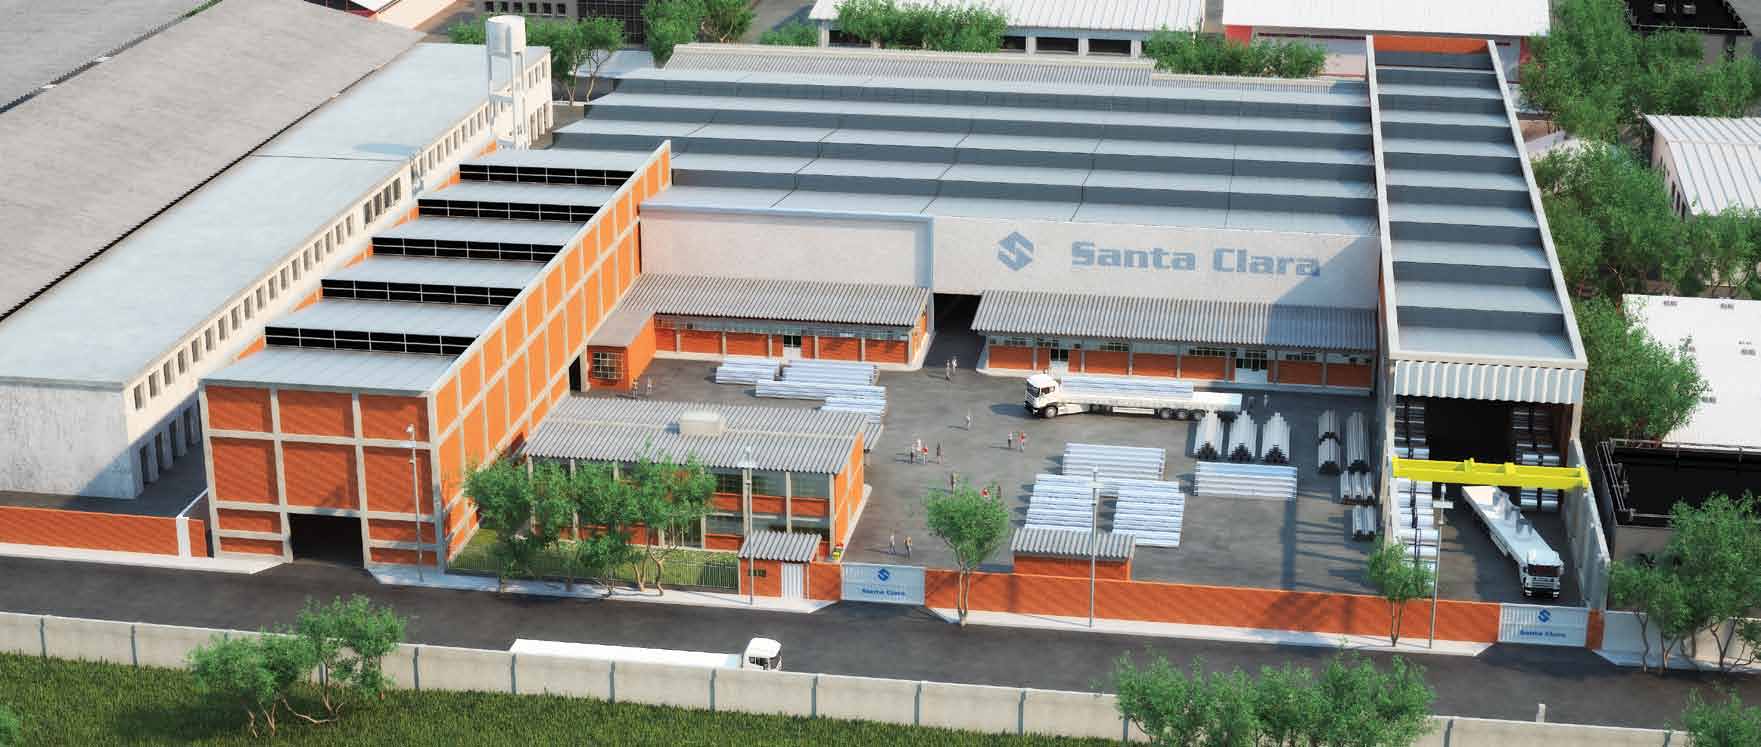 A Santa Clara Santa Clara Fundada em 1959, a Santa Clara atua na fabricação de Tubos em Aço Carbono com Costura, atendendo aos segmentos de Distribuição de Energia Elétrica, Construção Civil e